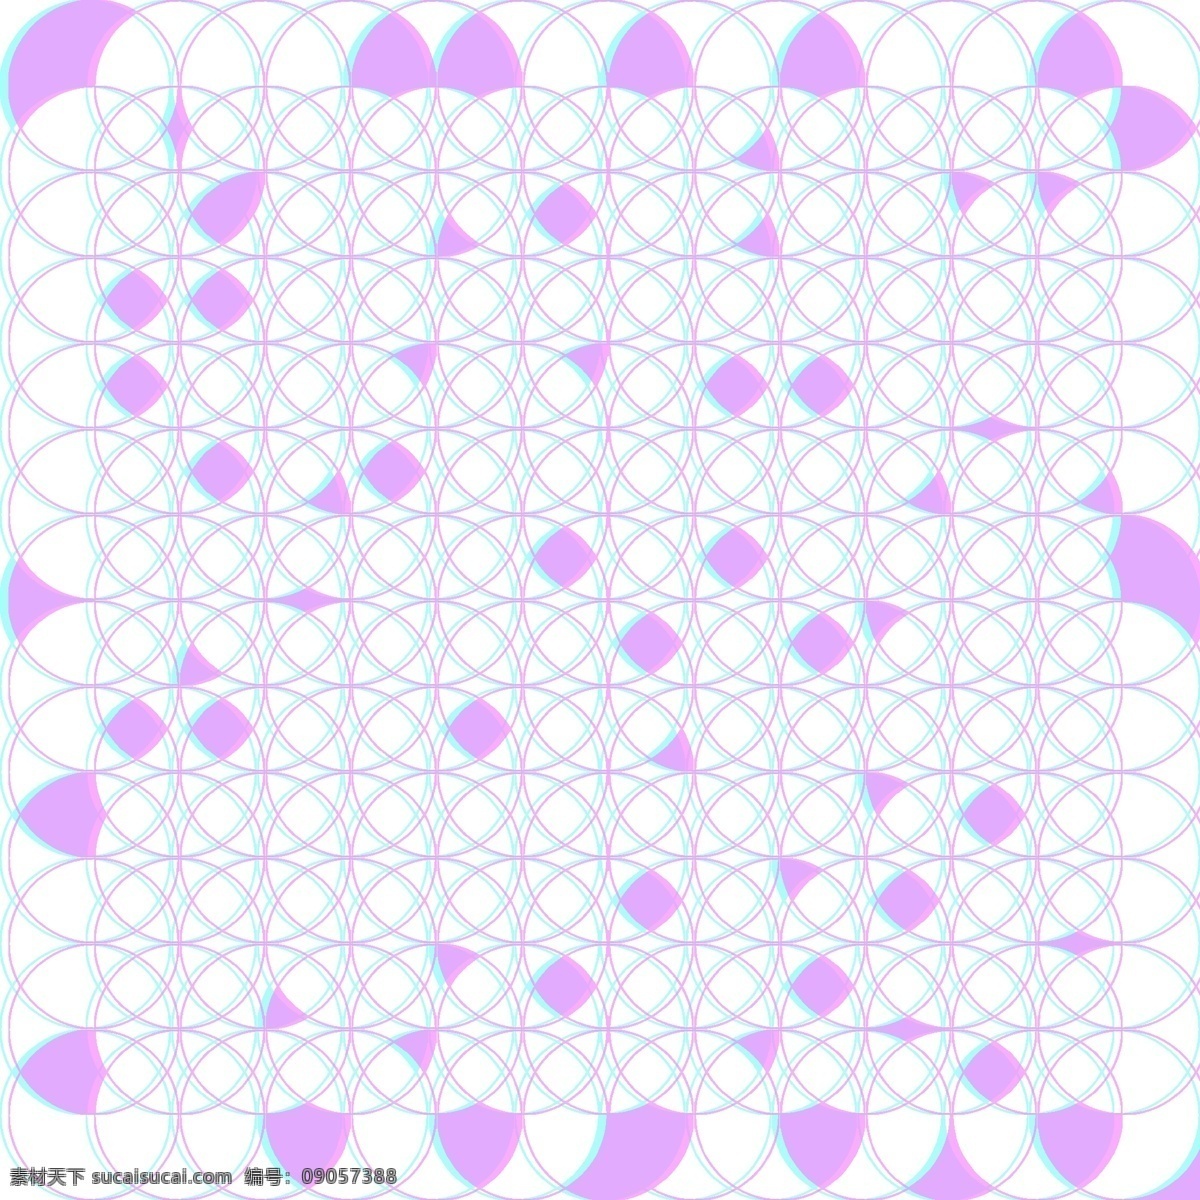 紫色 科技 科幻 风格 网格 背景 炫彩 紫色炫彩 科幻网格 紫色网格背景 圆形网格 不规则 几何